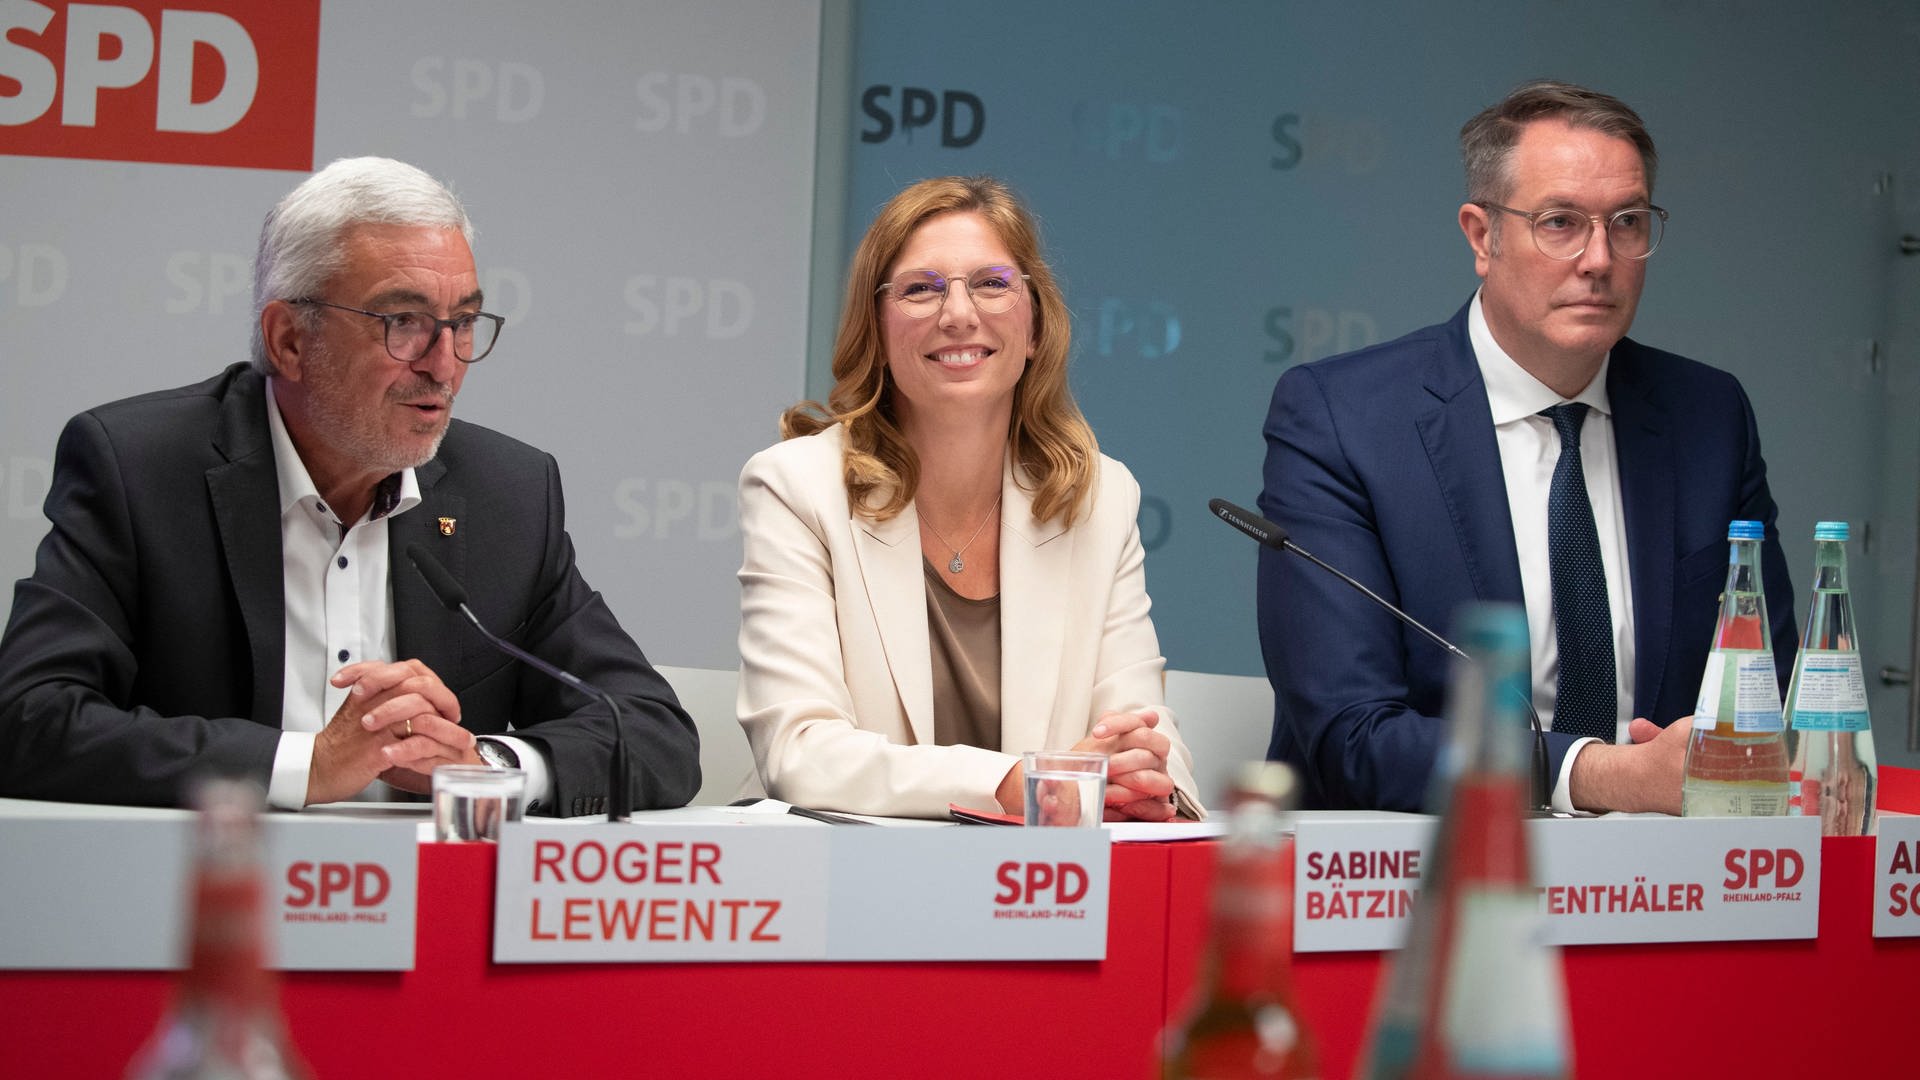 Künftige SPD-Chefin Bätzing-Lichtenthäler will 